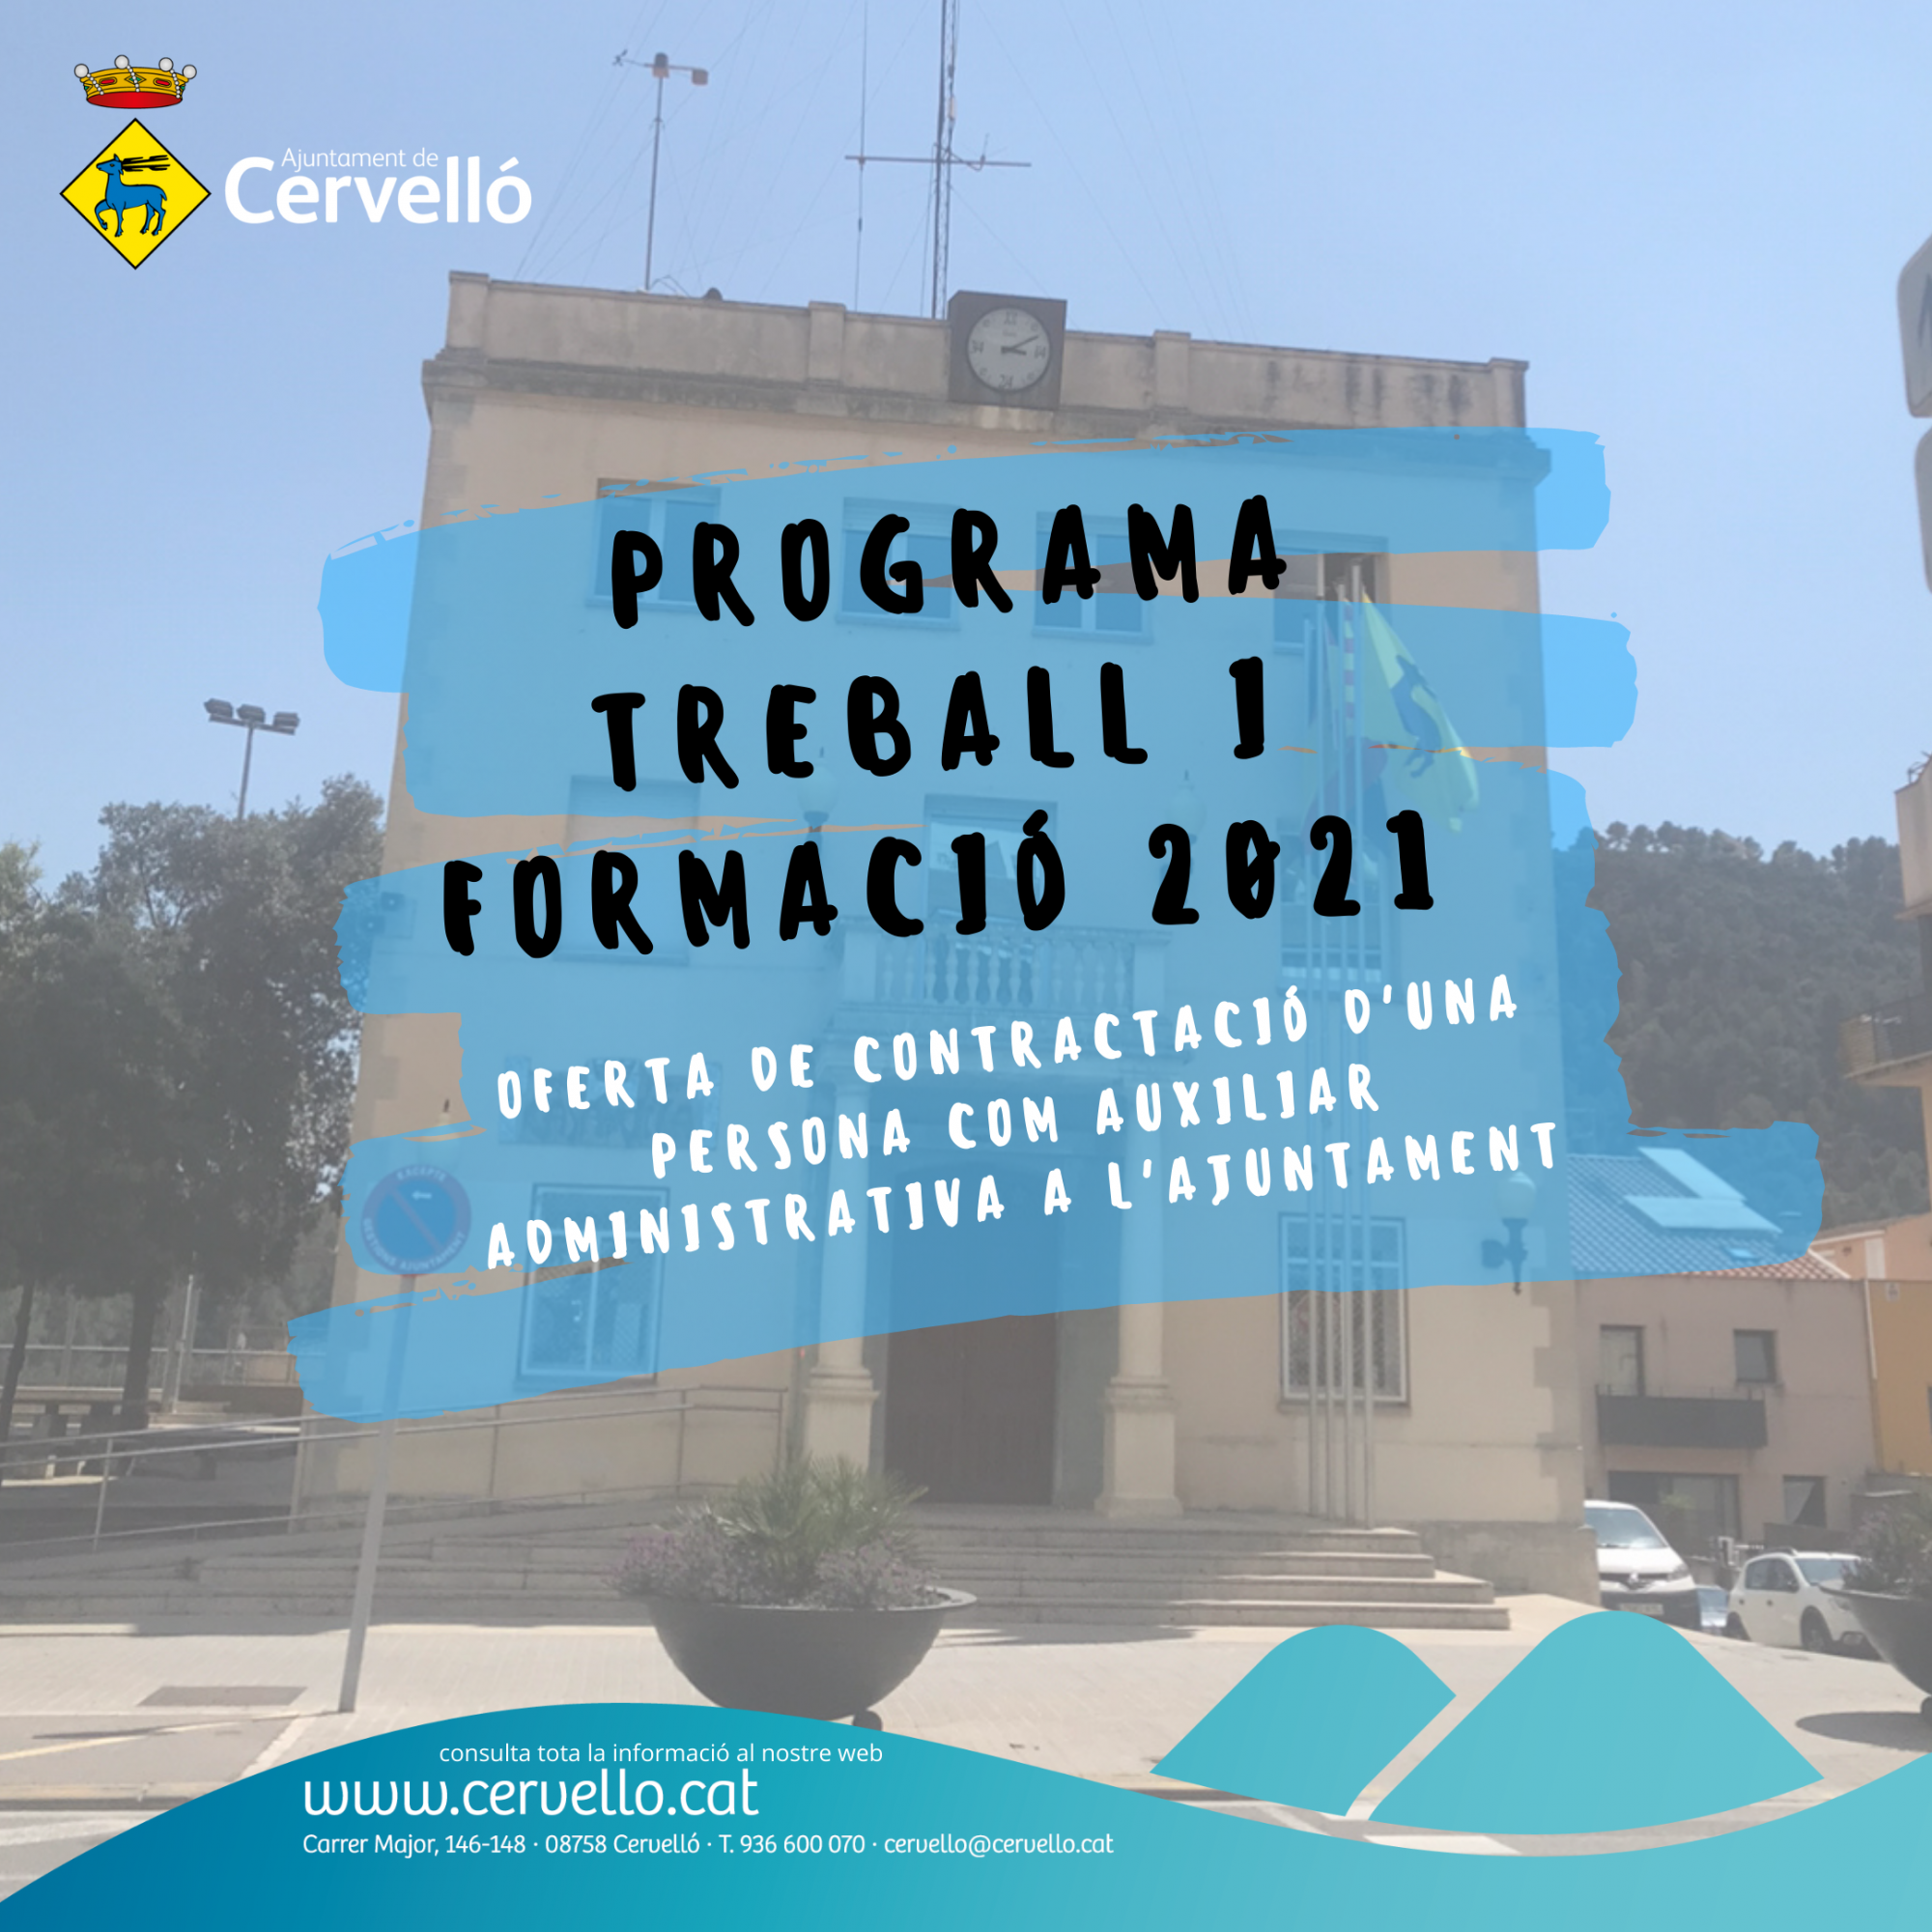 El Ayuntamiento de Cervelló contratará a una persona dentro del Programa Trabajo y Formación